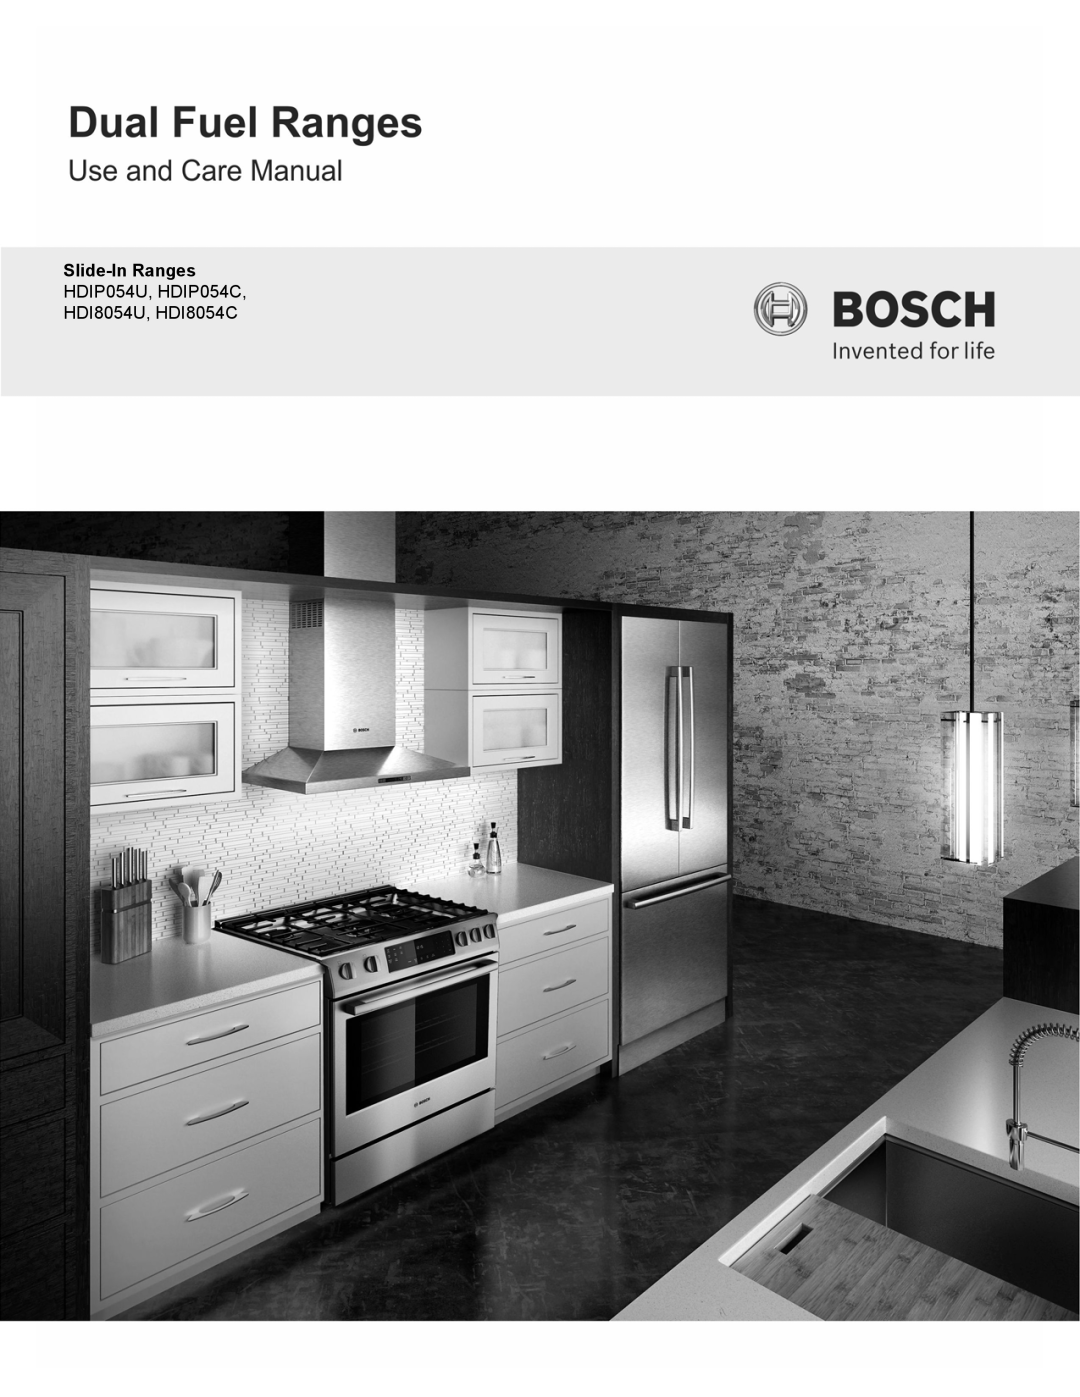 Bosch Appliances manual Slide-In Ranges HDIP054U, HDIP054C, HDI8054U, HDI8054C 